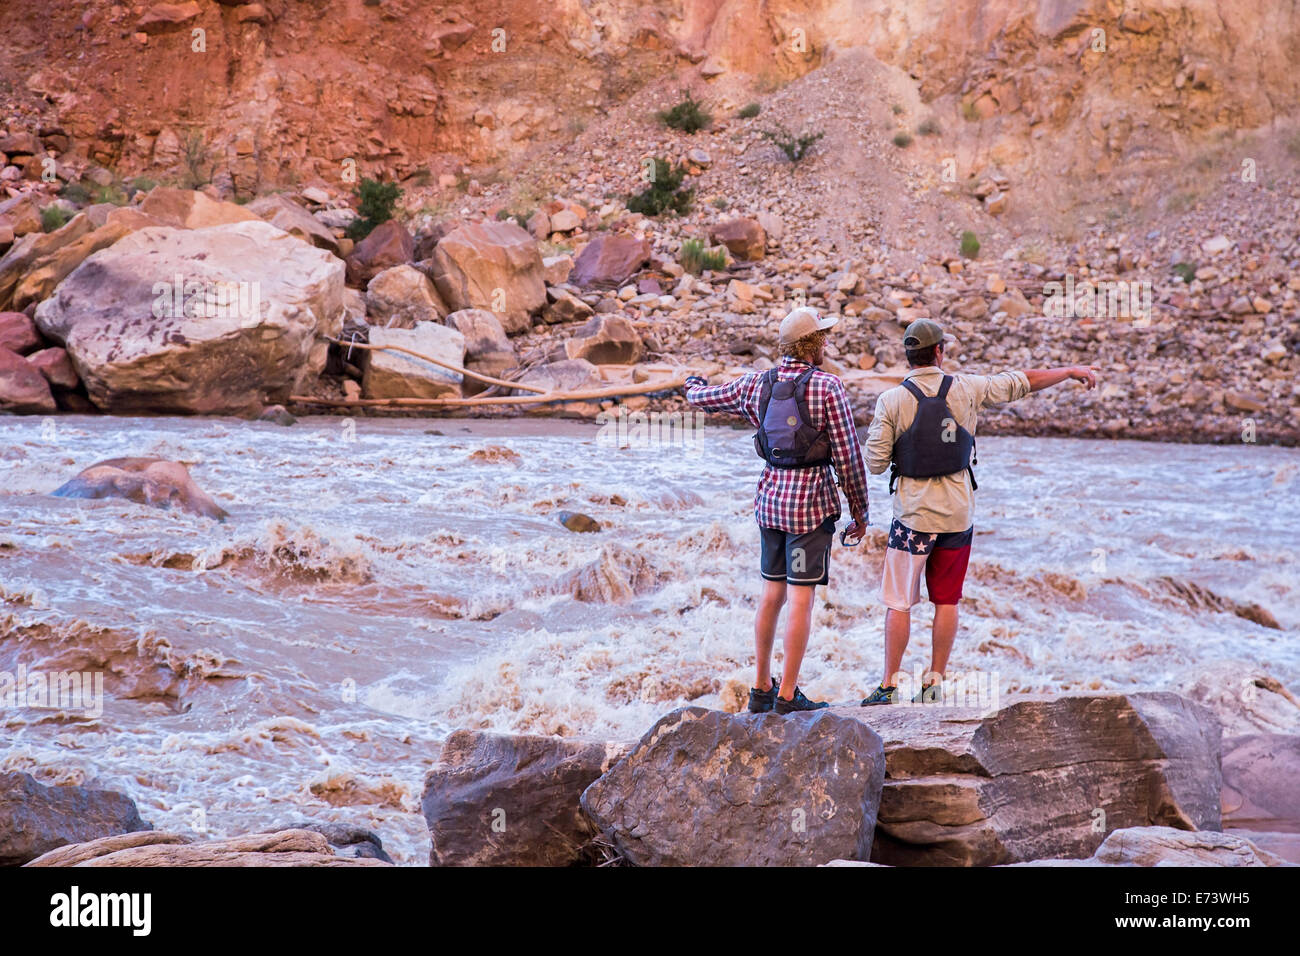 Il Parco Nazionale di Canyonlands, Utah - guide scout Grande discesa 3 rapids durante un viaggio in zattera sul fiume Colorado. Foto Stock